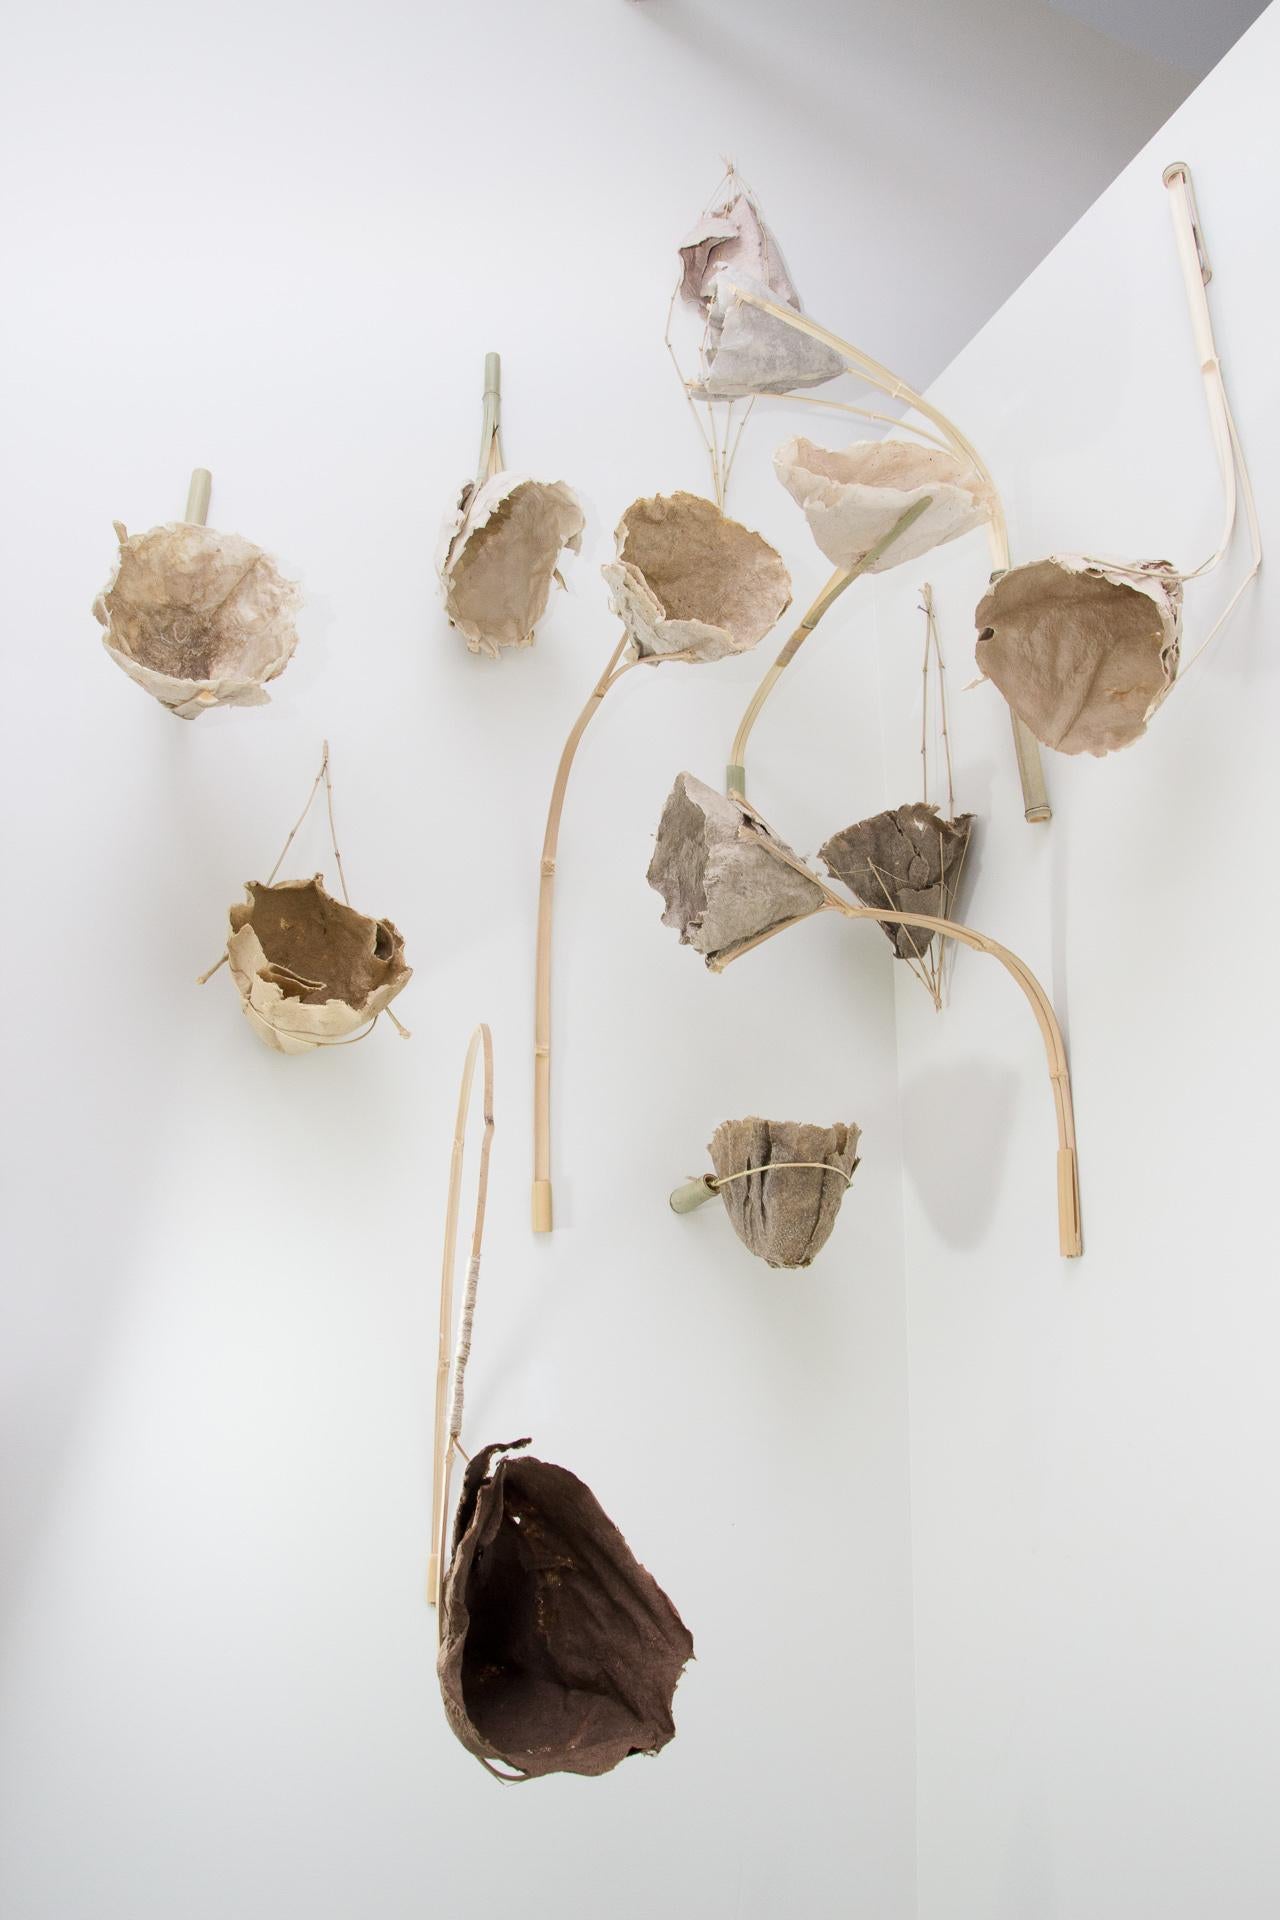 Michele Brody, Re-Blooms, installation, papier coulé à la main, bambou, 8'h x 5'w x 3'd